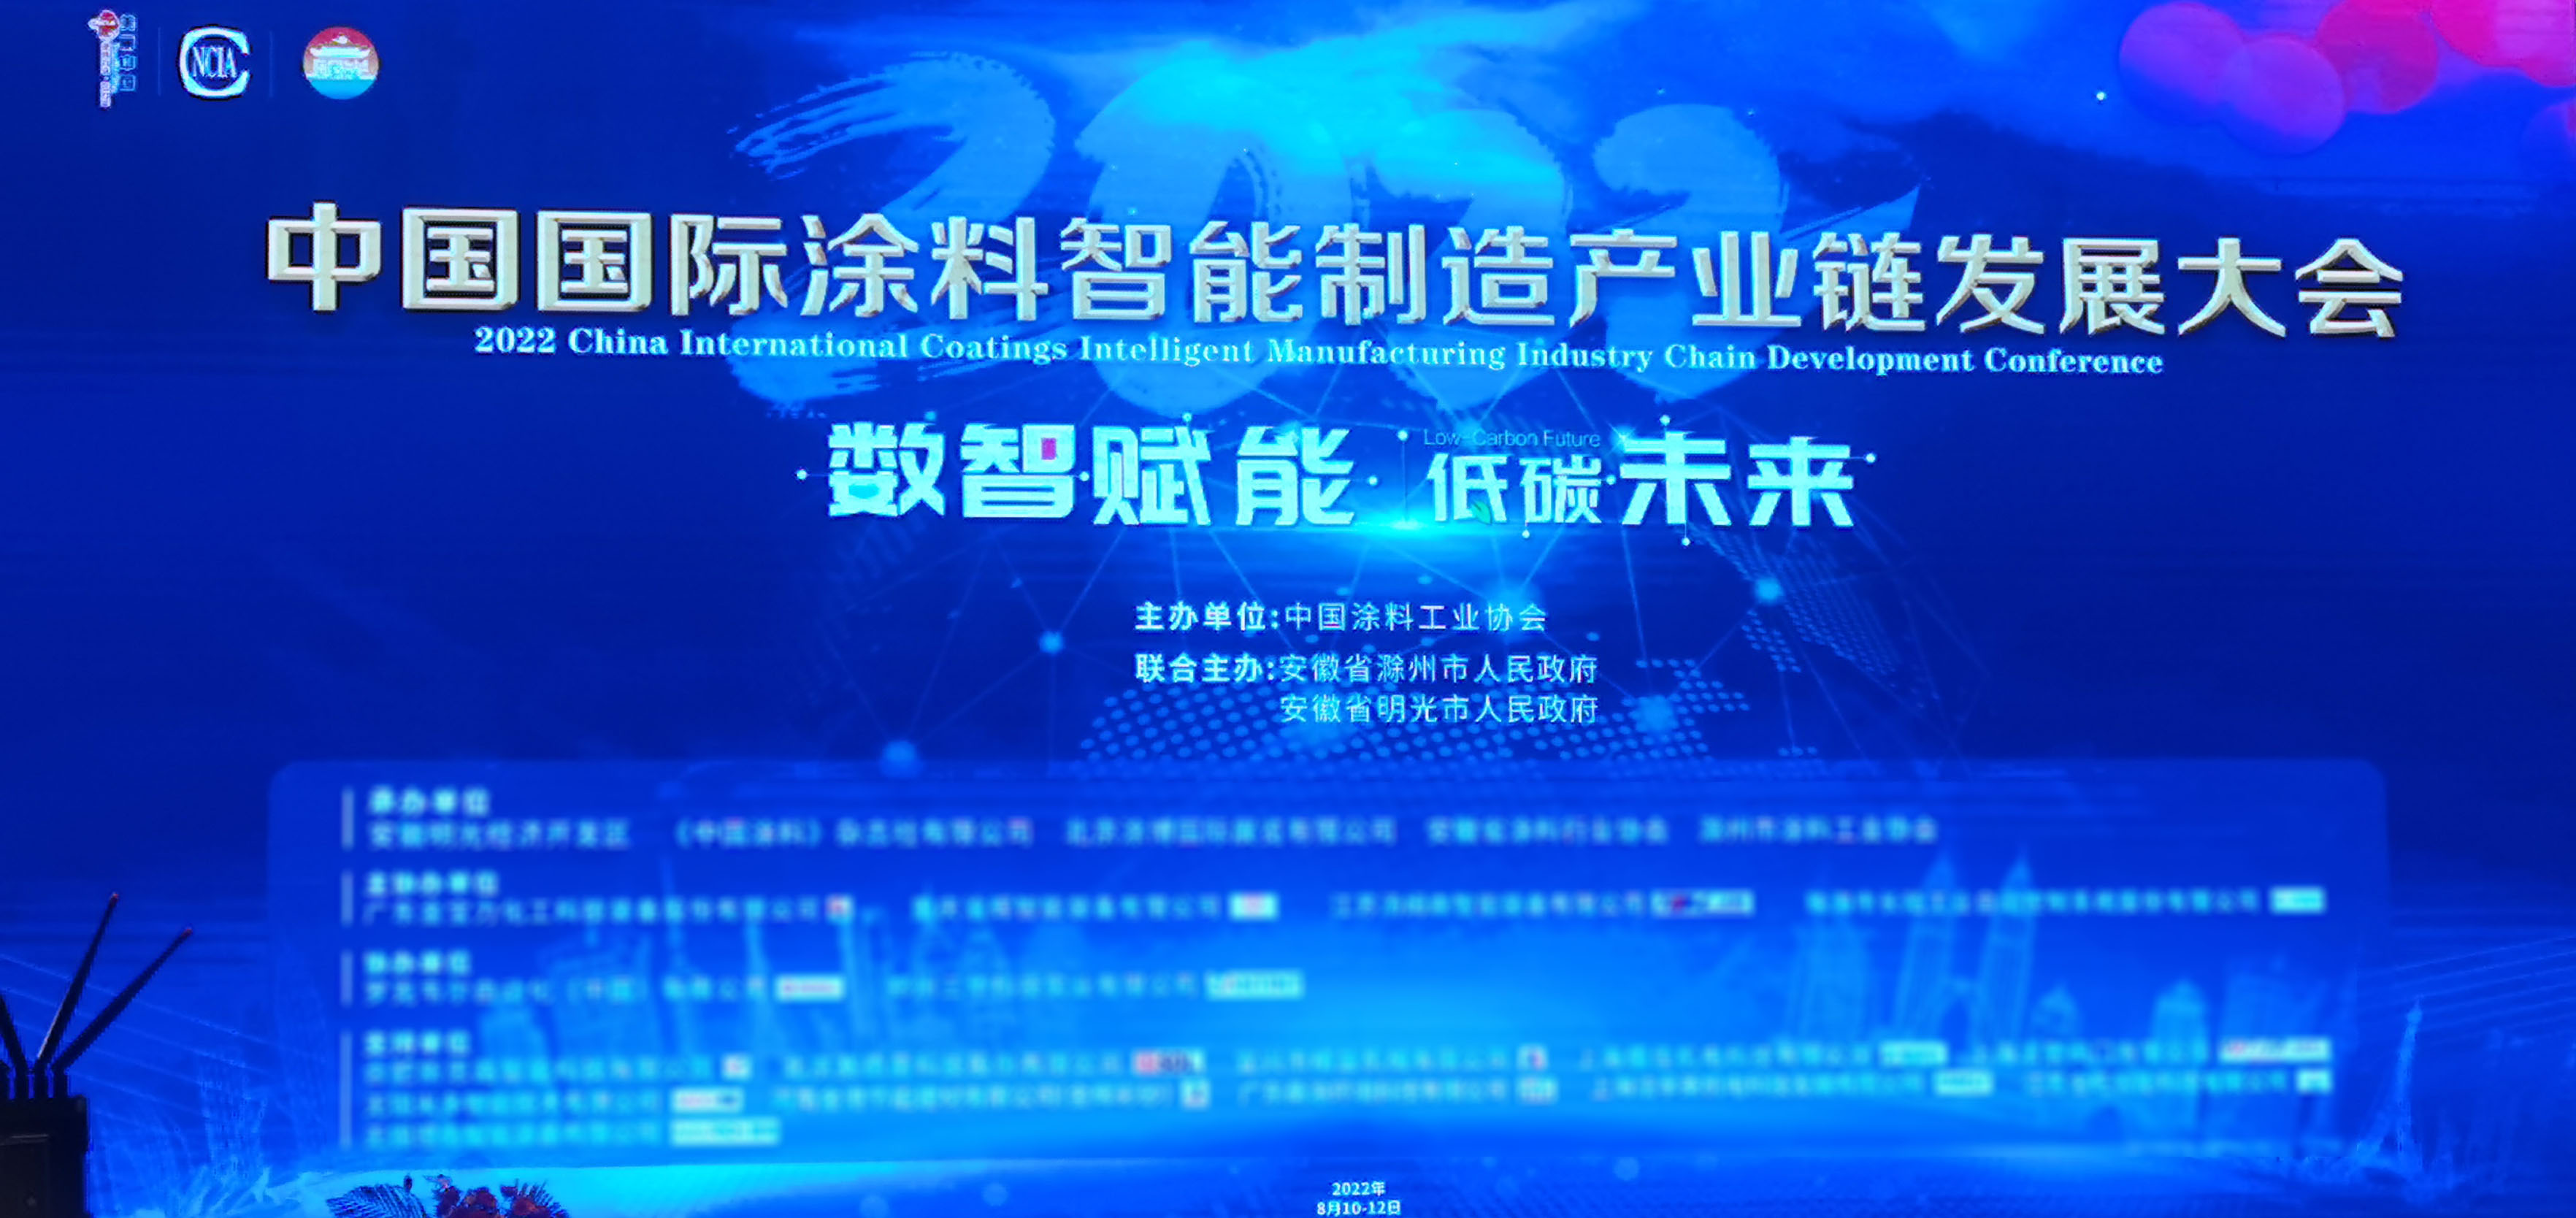 上海壹维应邀参加“2022中国国际涂料智能制造产业链发展大会”